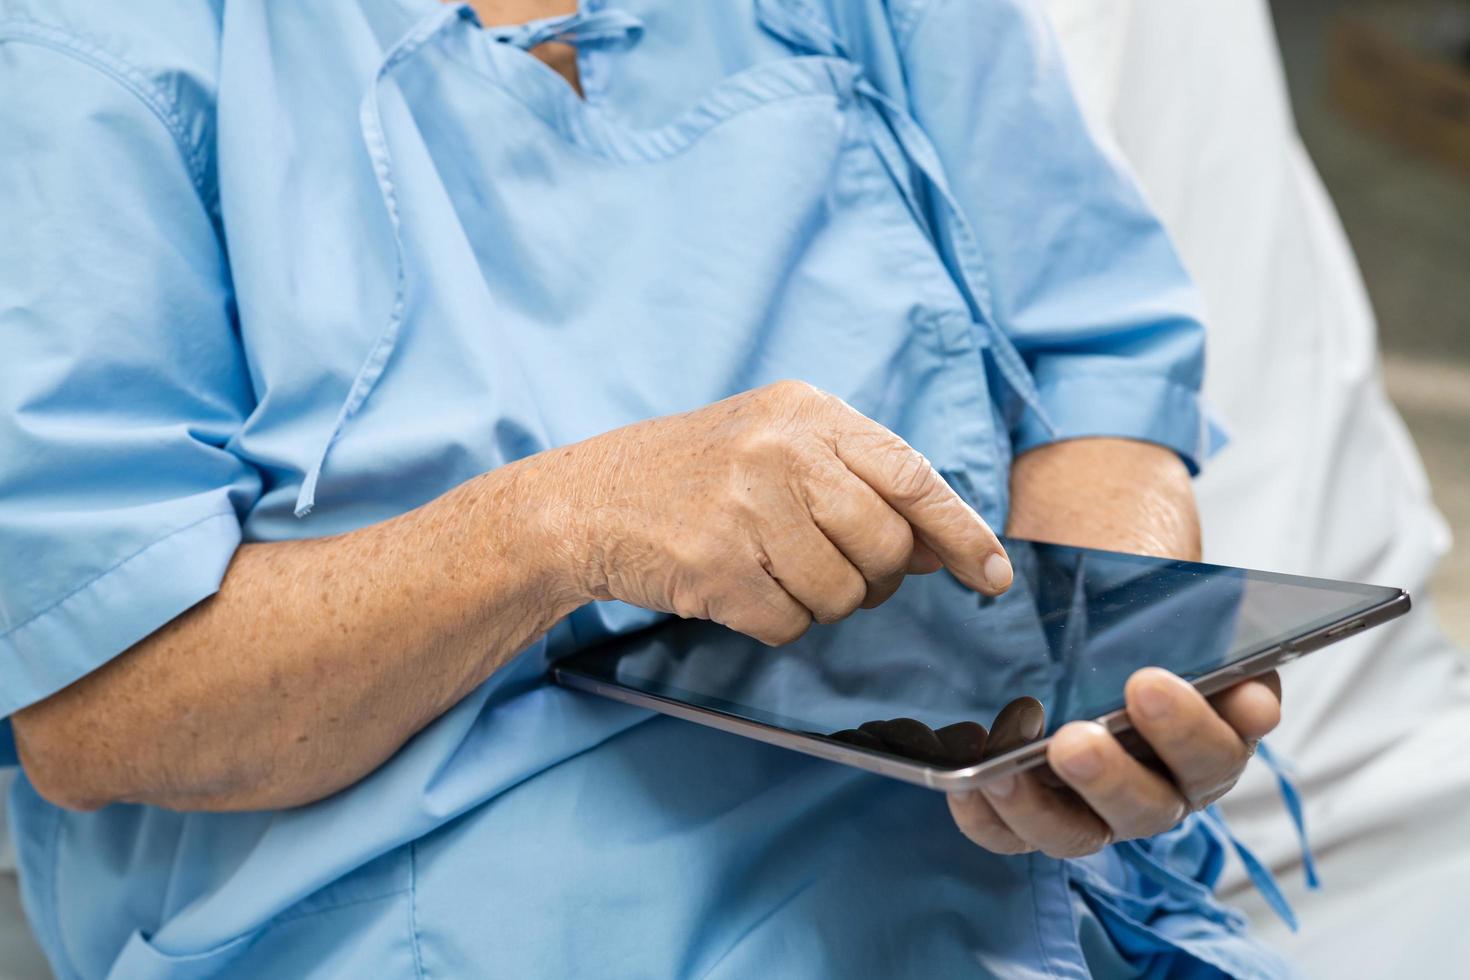 asiatisk senior eller äldre gammal damkvinnapatient som håller i händerna digital tablett och läser e-post medan du sitter på sängen på vårdavdelningen, hälsosamt starkt medicinskt koncept foto